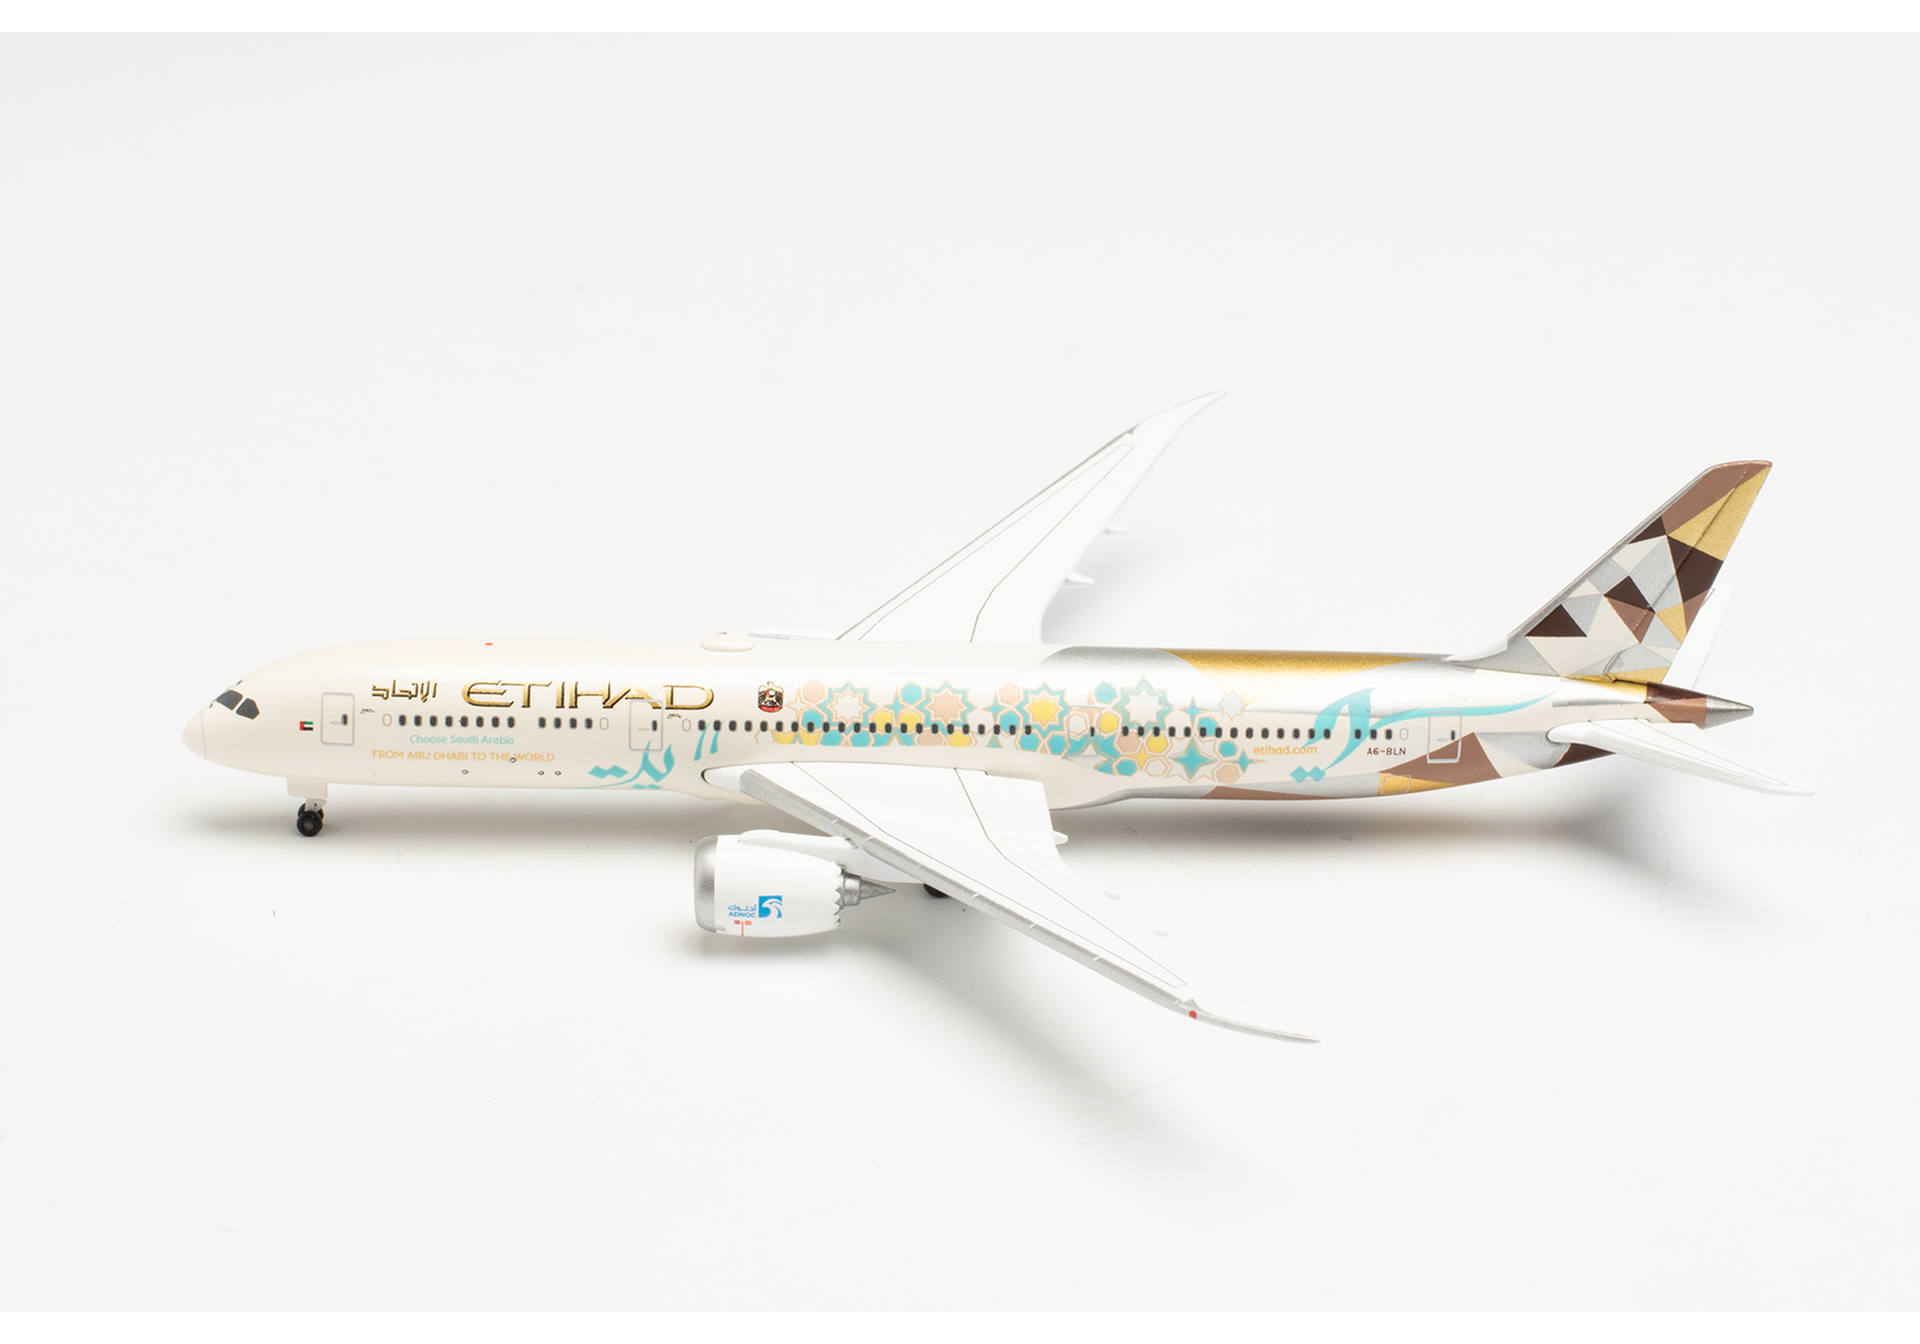  ETIHAD AIRWAYS BOEING 787-9 DREAMLINER CHOOSE SAUDI ARABIA  A6-BLN 1:500 535748. # 1 hobbyplus.ru